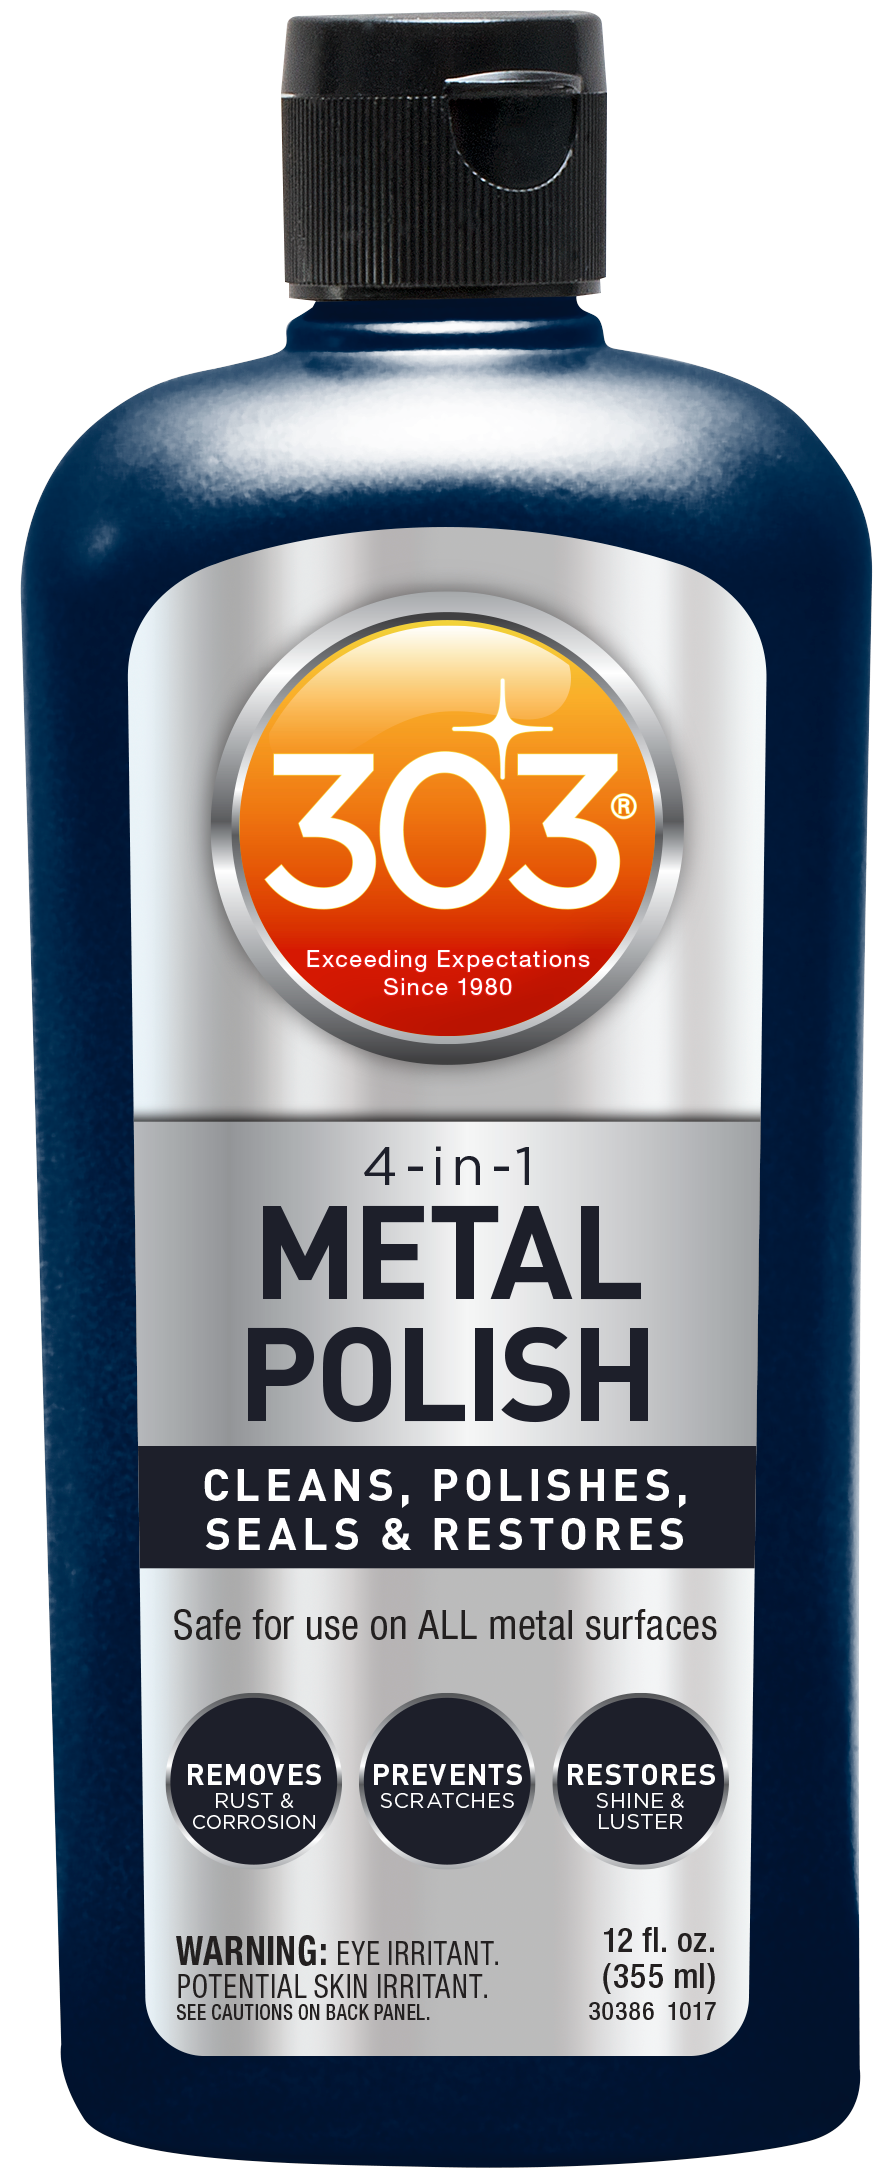 Metal Polish